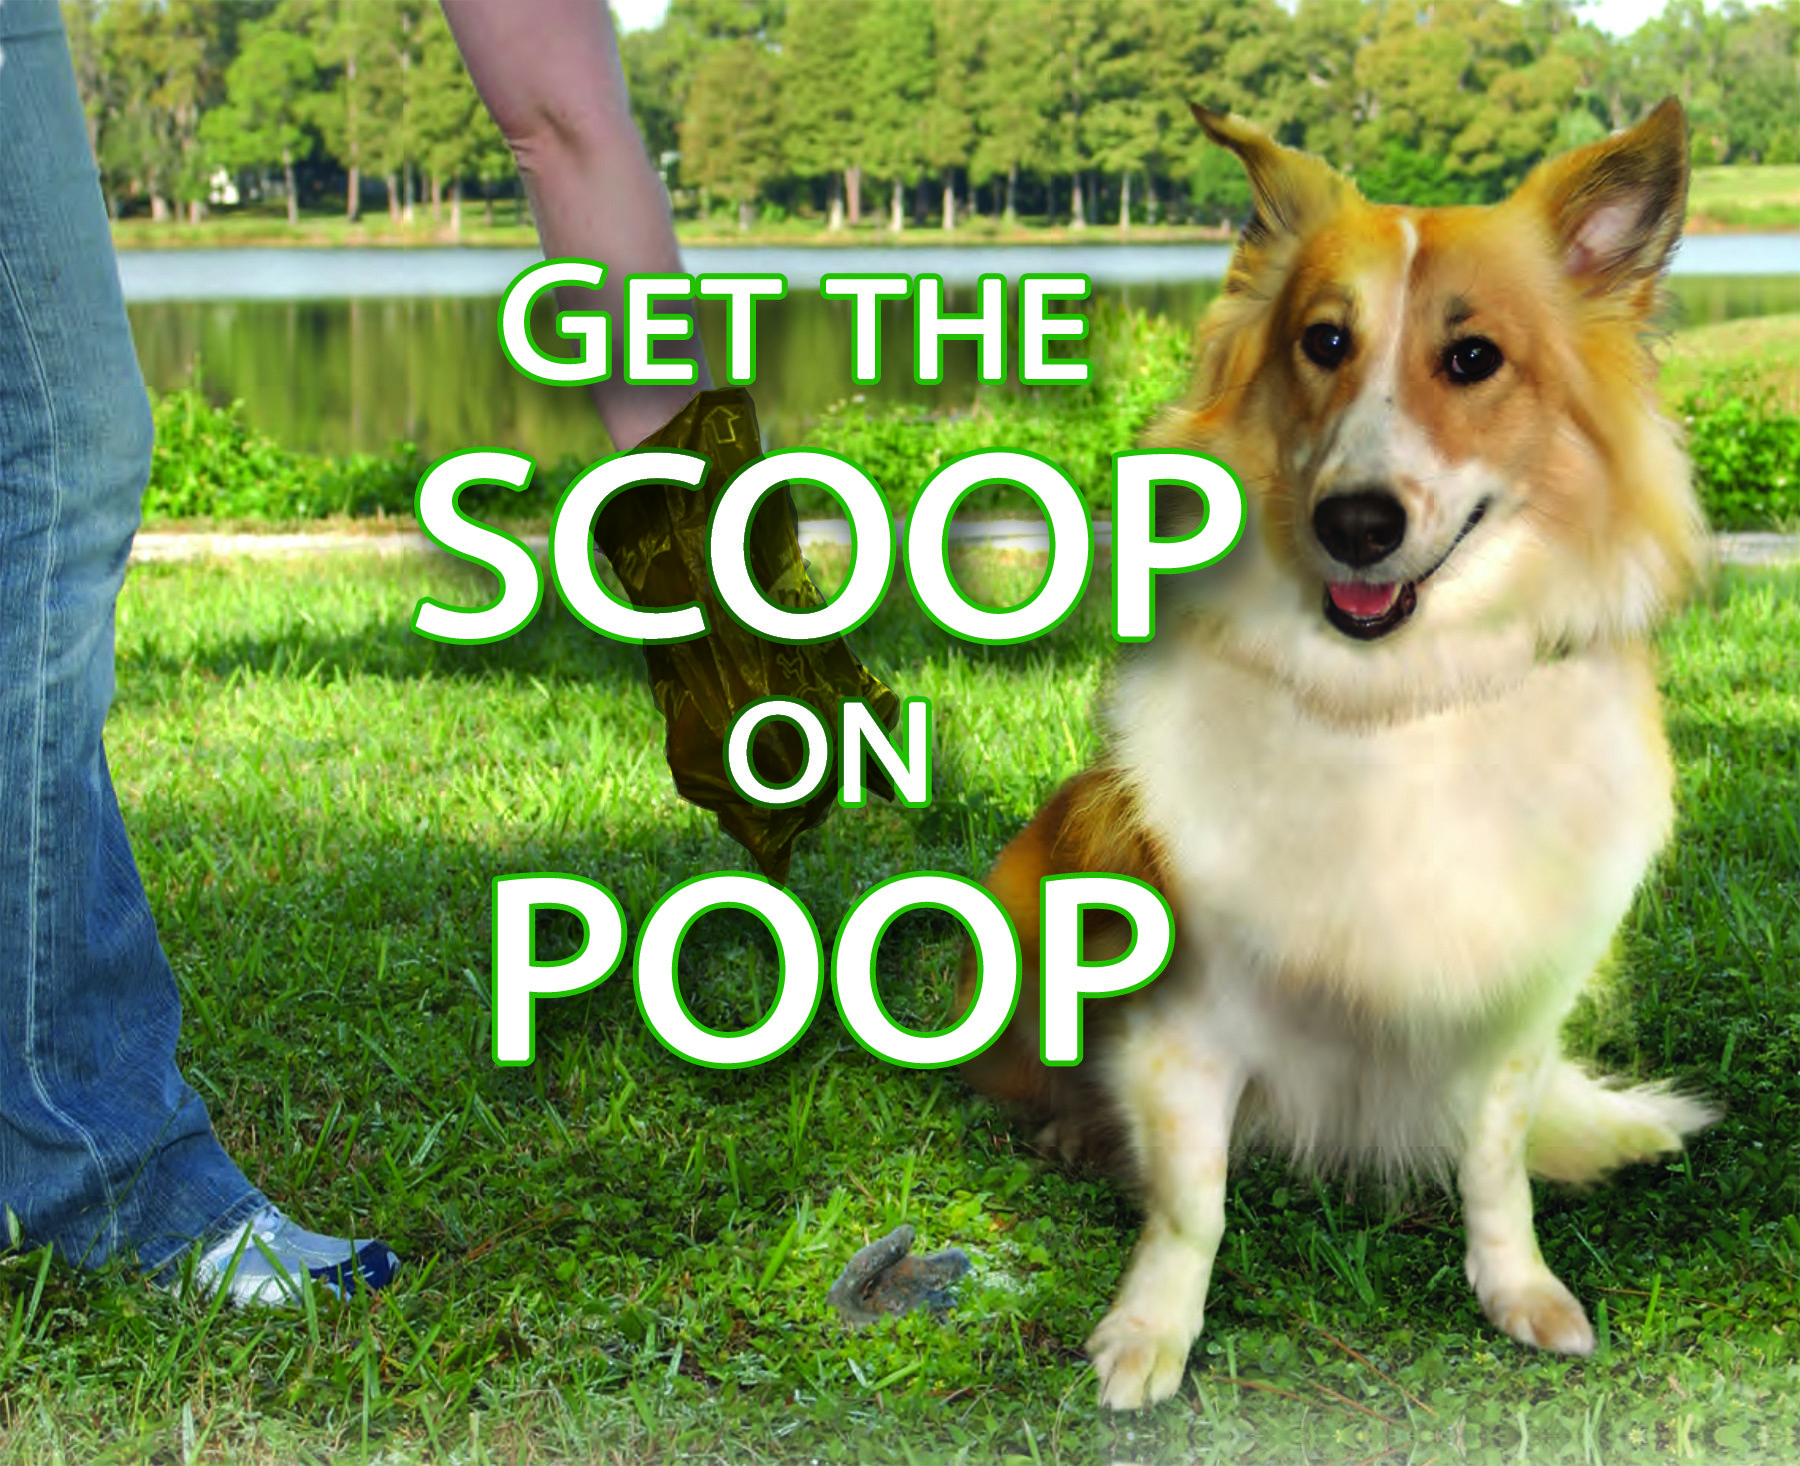 Get the scoop on poop